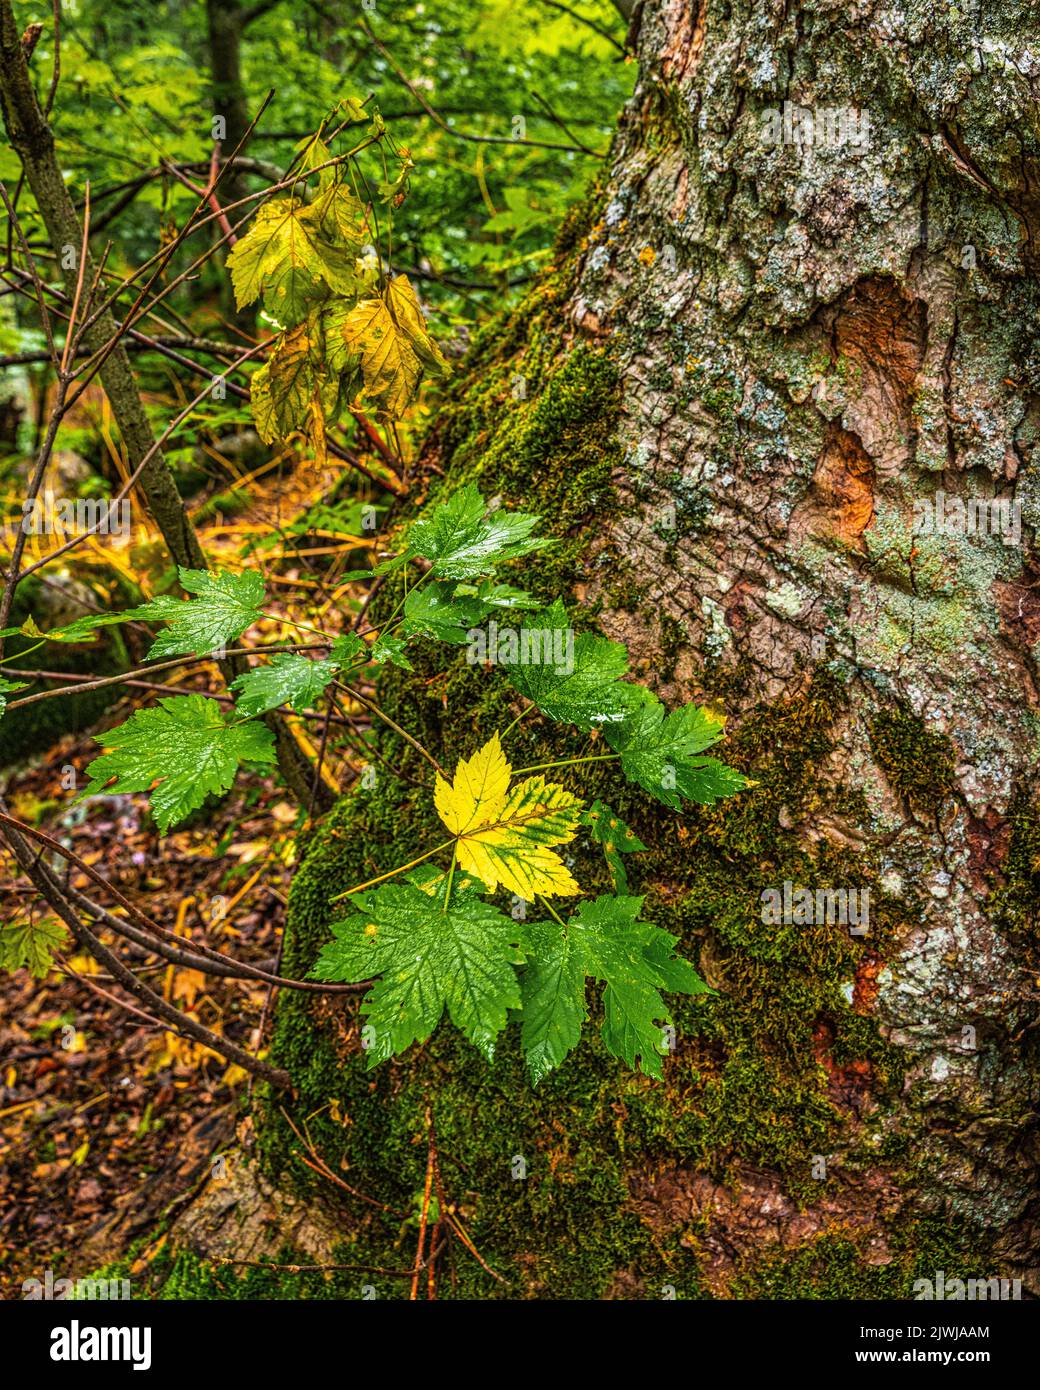 Giovani piante nascono su un vecchio tronco di acero, Acer L., nella riserva naturale Bosco di Sant'Antonio. Abruzzo, Italia, Europa Foto Stock